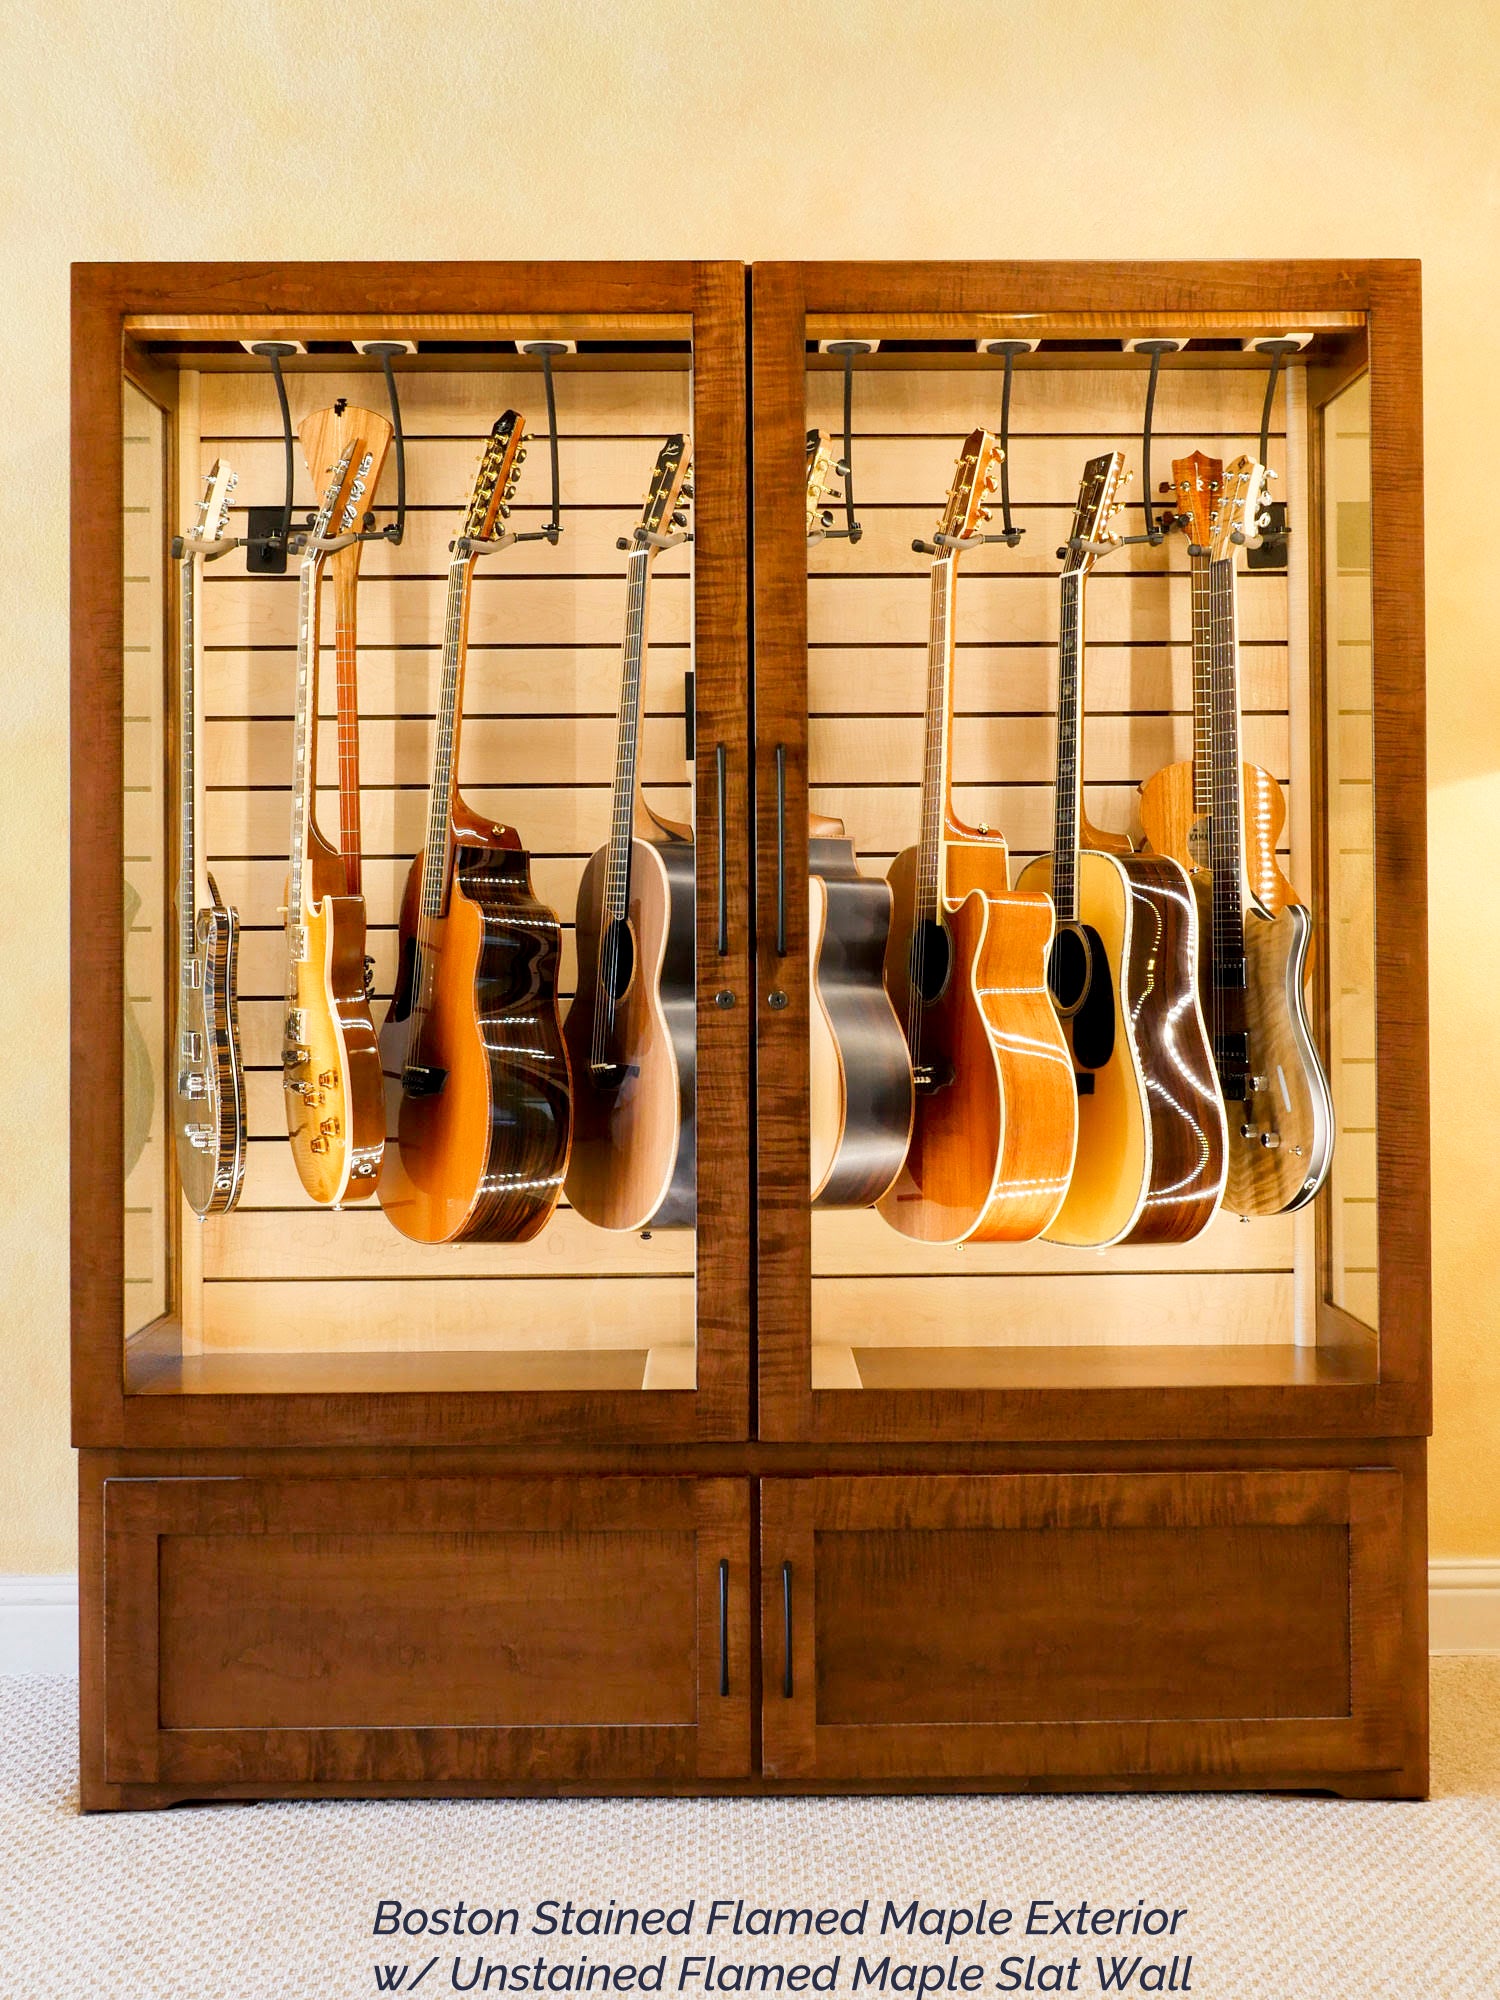 Guitar Hanger, Guitar Holder Wall Mount, Guitar Hanger Wall Mount, Wall  Guitar Stand, Guitar Storage, Guitar Wall Storage, Guitar Display 